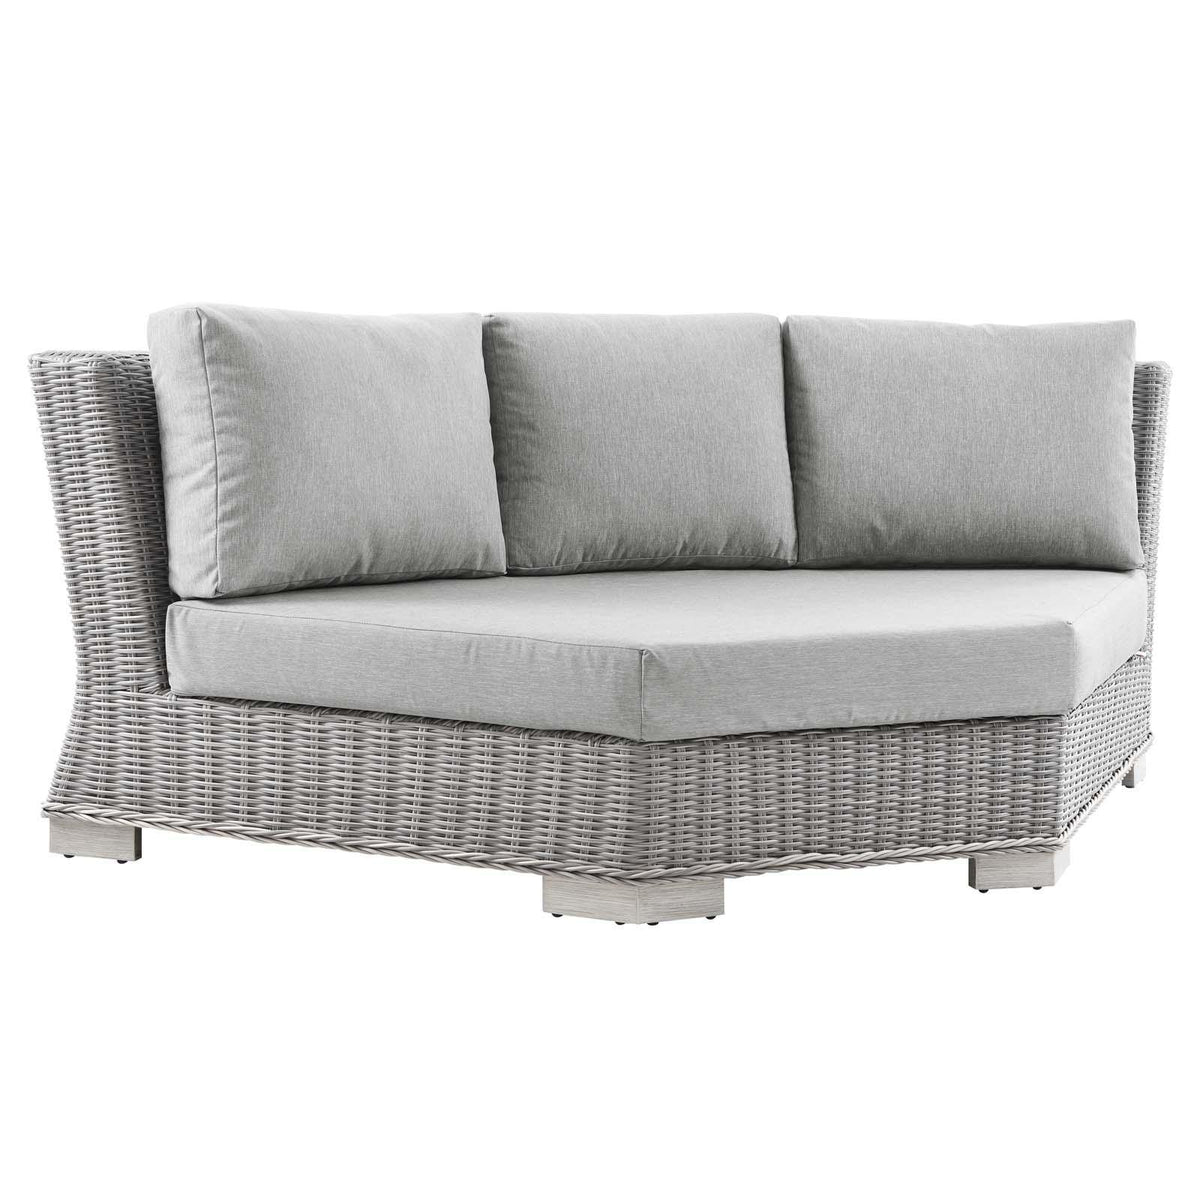 Modway Furniture Modern Conway Outdoor Patio Wicker Rattan Round Corner Chair - EEI-4844